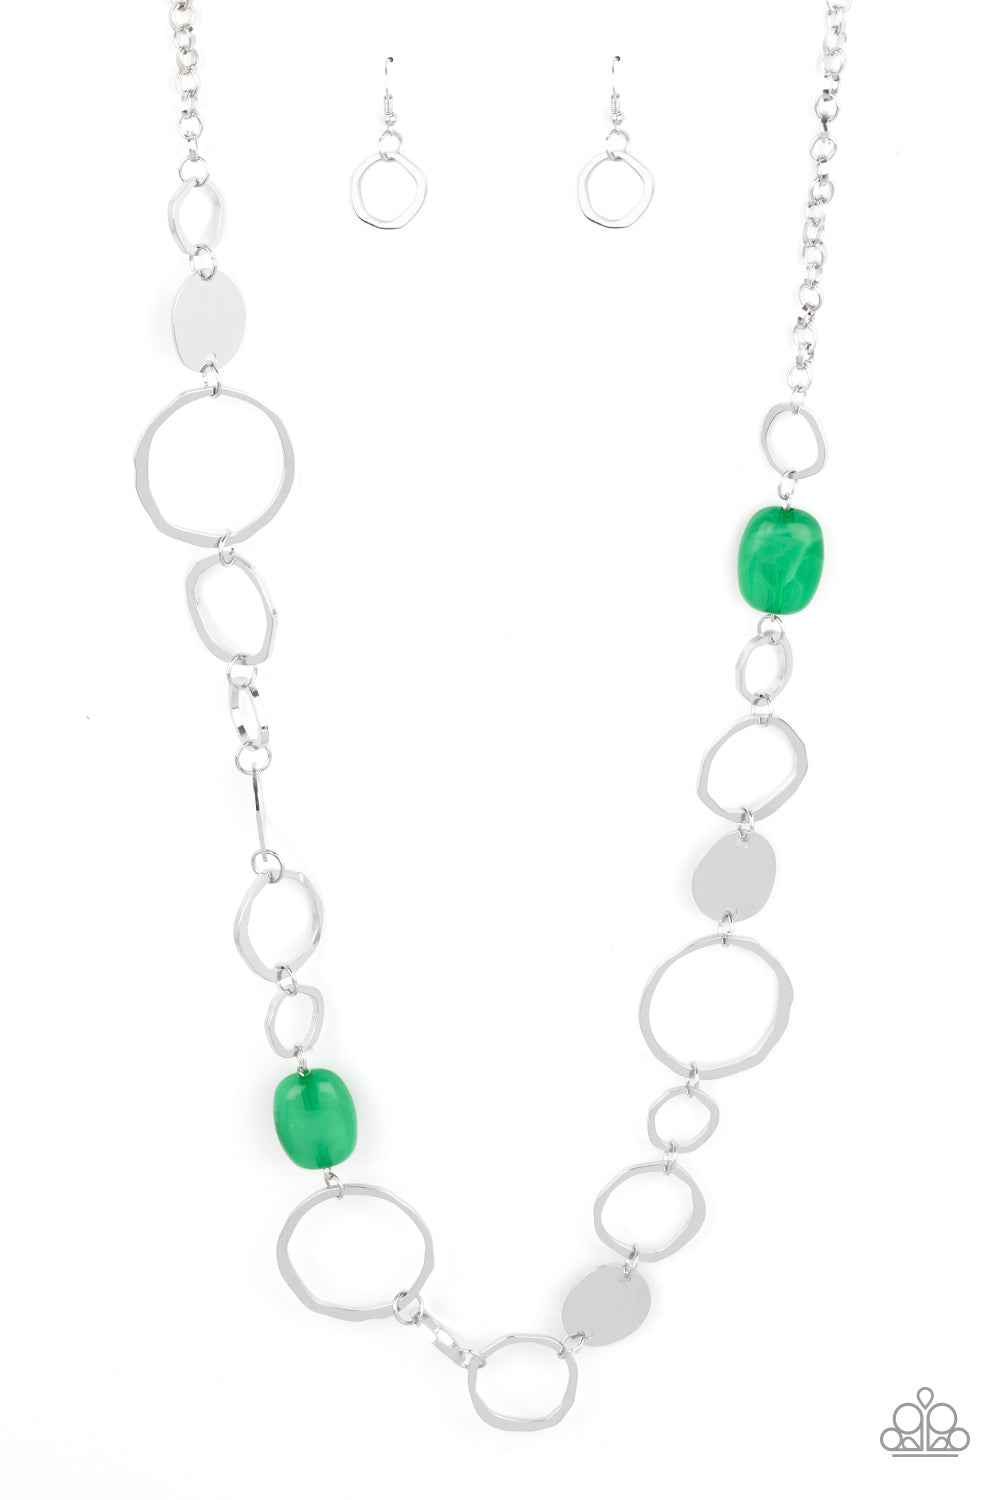 Paparazzi Jewelry Necklace Set GREEN Key West Walkabout | eBay